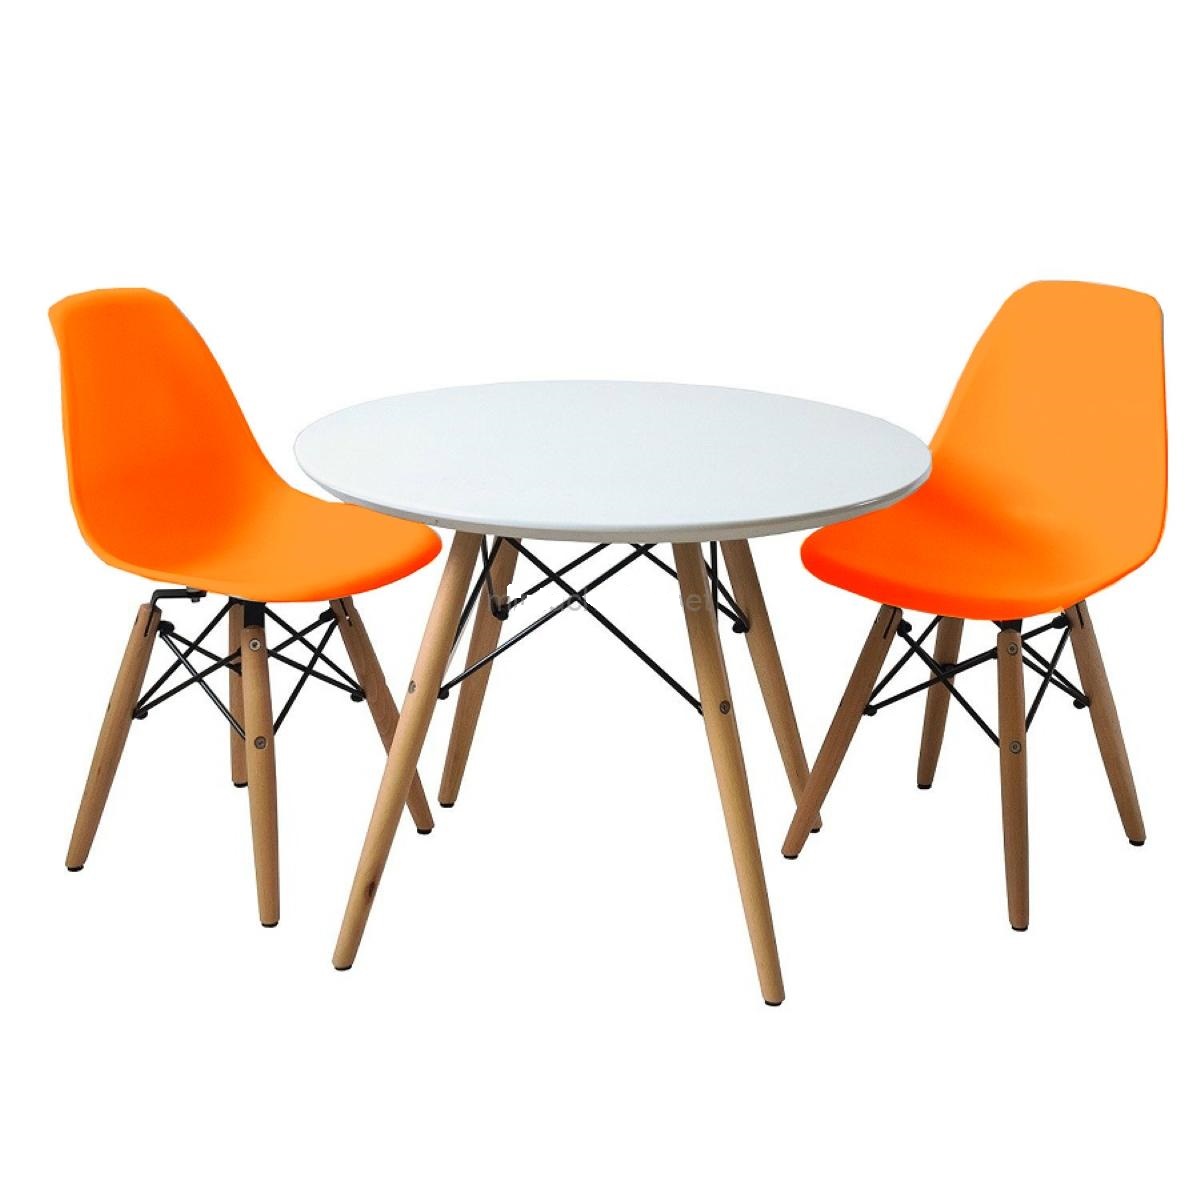 См групп столы. Ami / комплект 2 стула Eames. Пластиковые стулья для кухни. Стул оранжевый для кухни. Обеденная группа Eames.